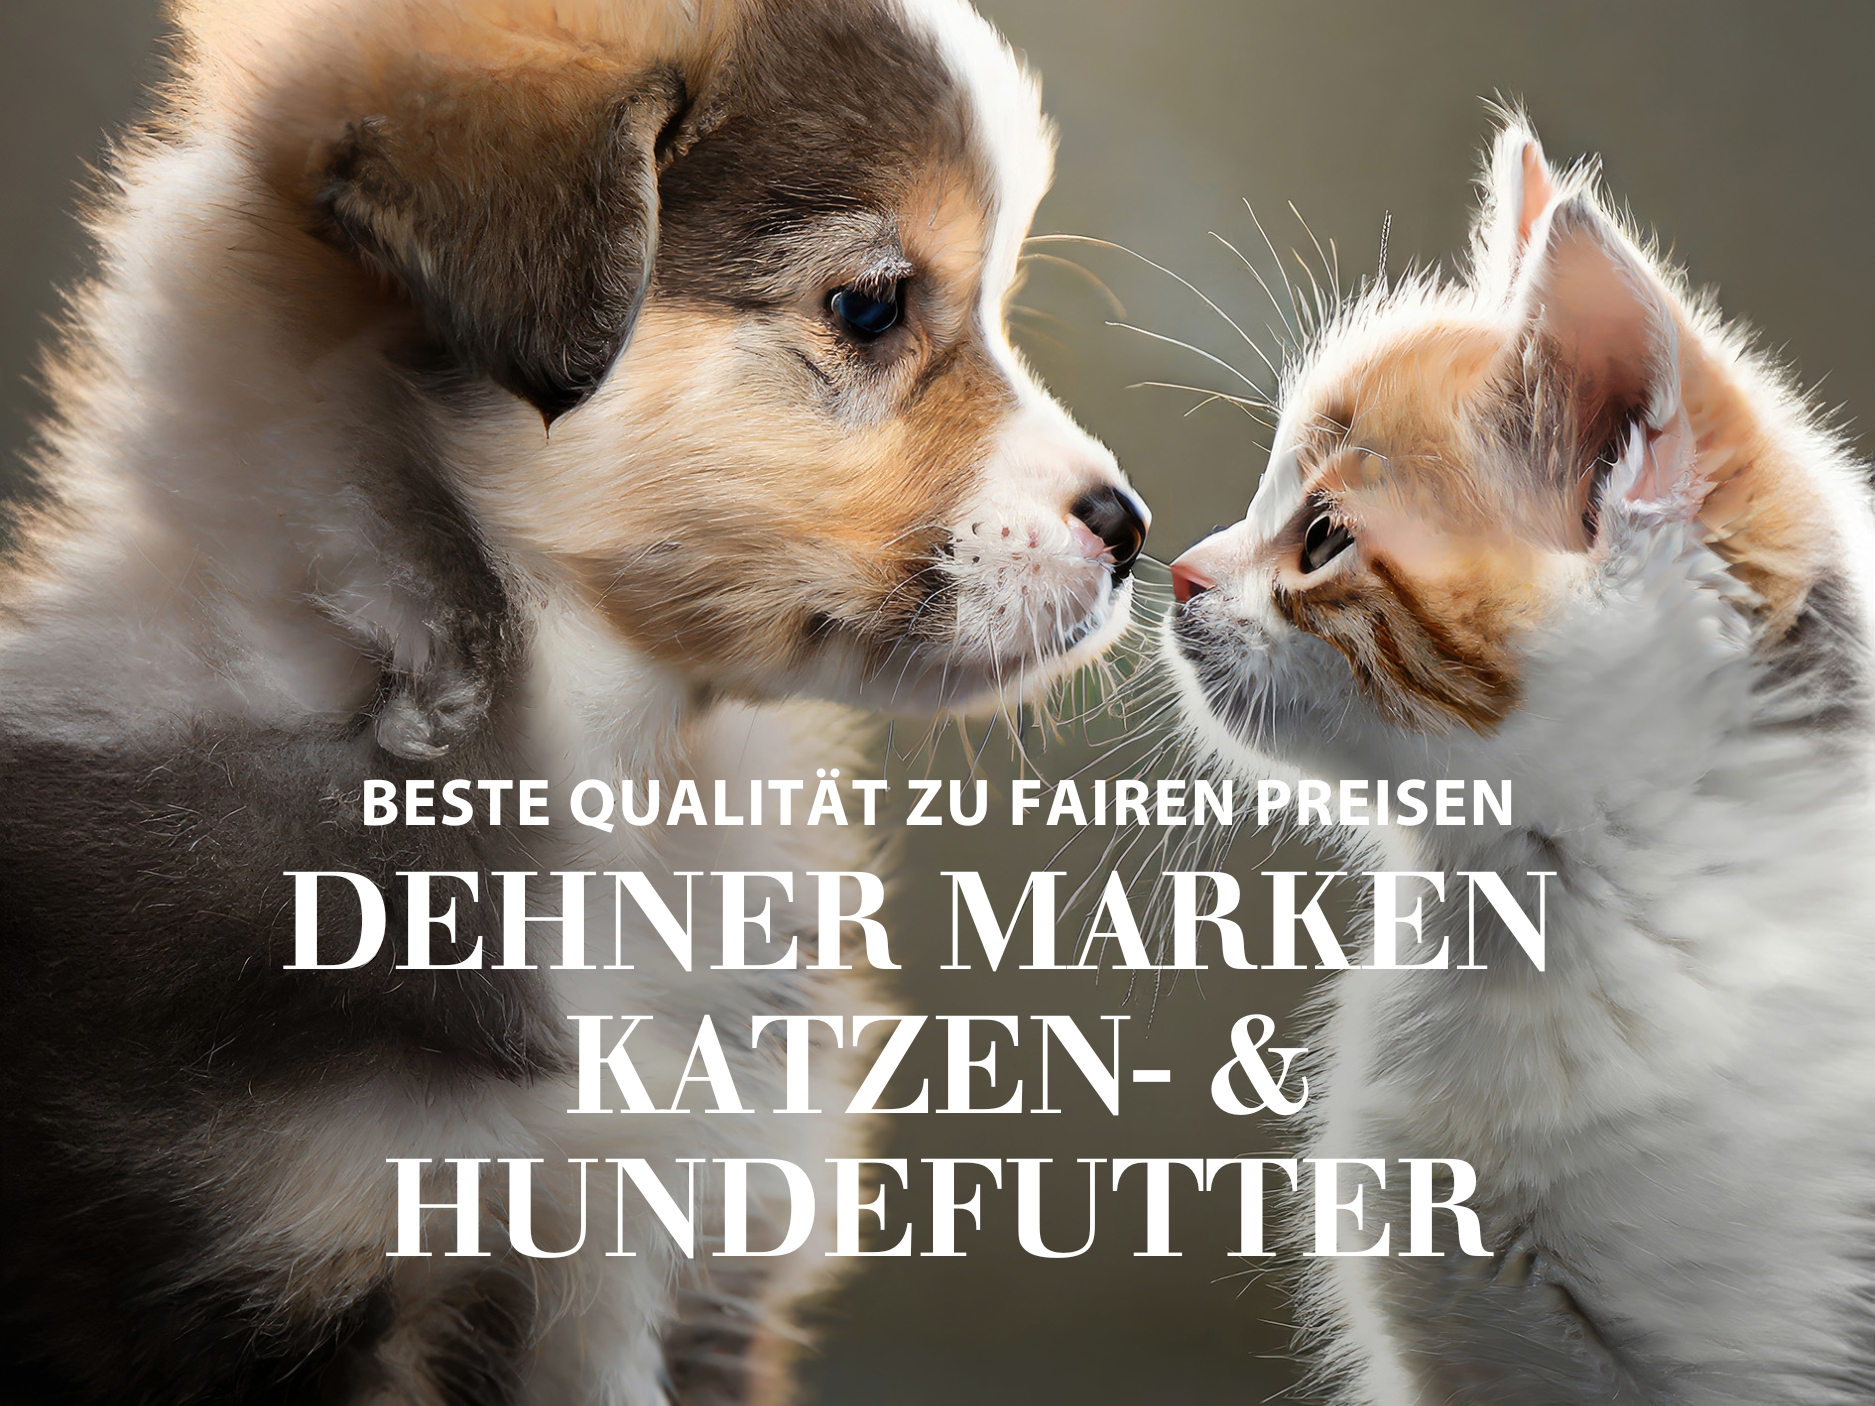 Dehner Marken Katzen- & Hundefutter